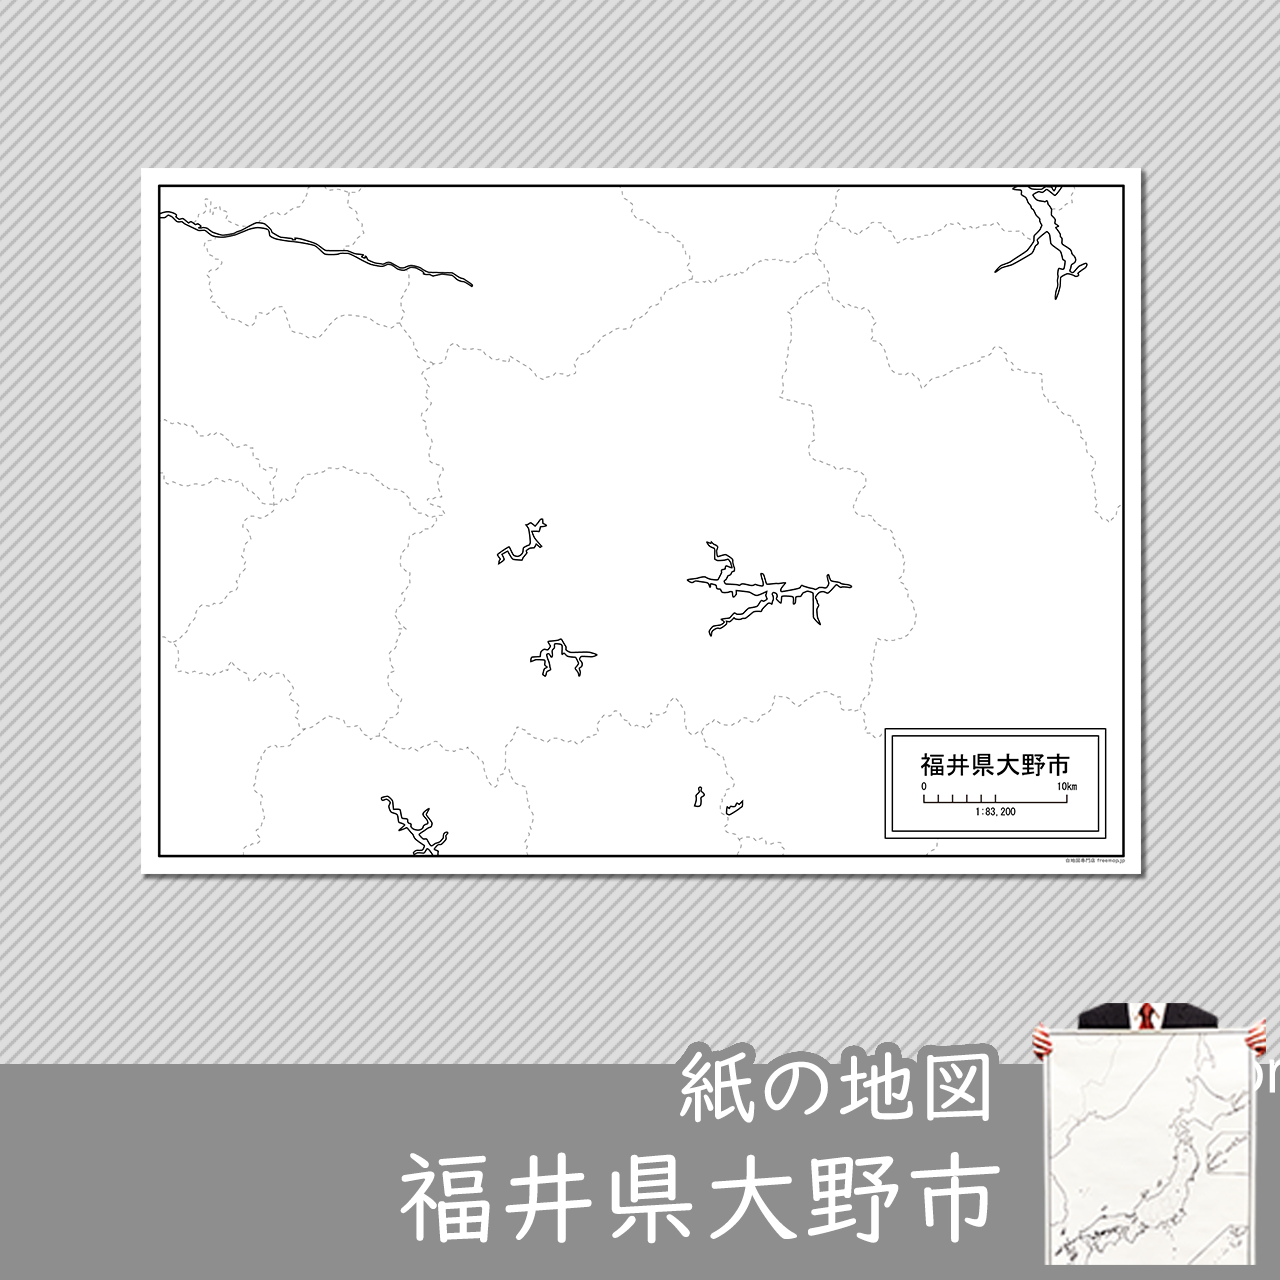 大野市の紙の白地図